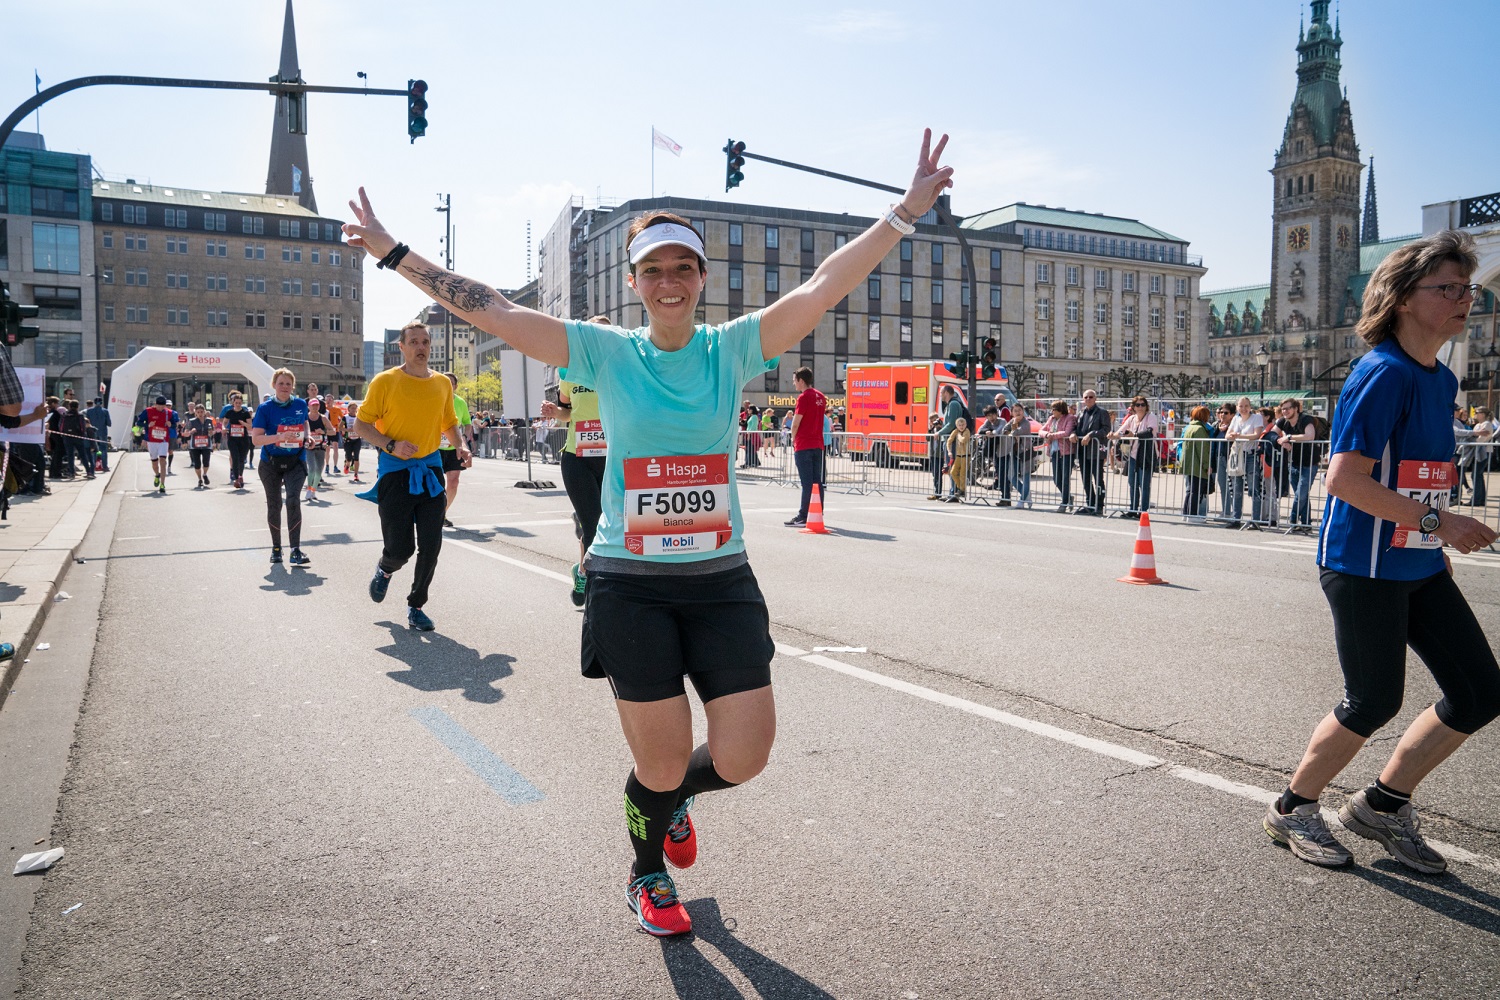 Haspa Marathon Hamburg runs together with 361° in 2019